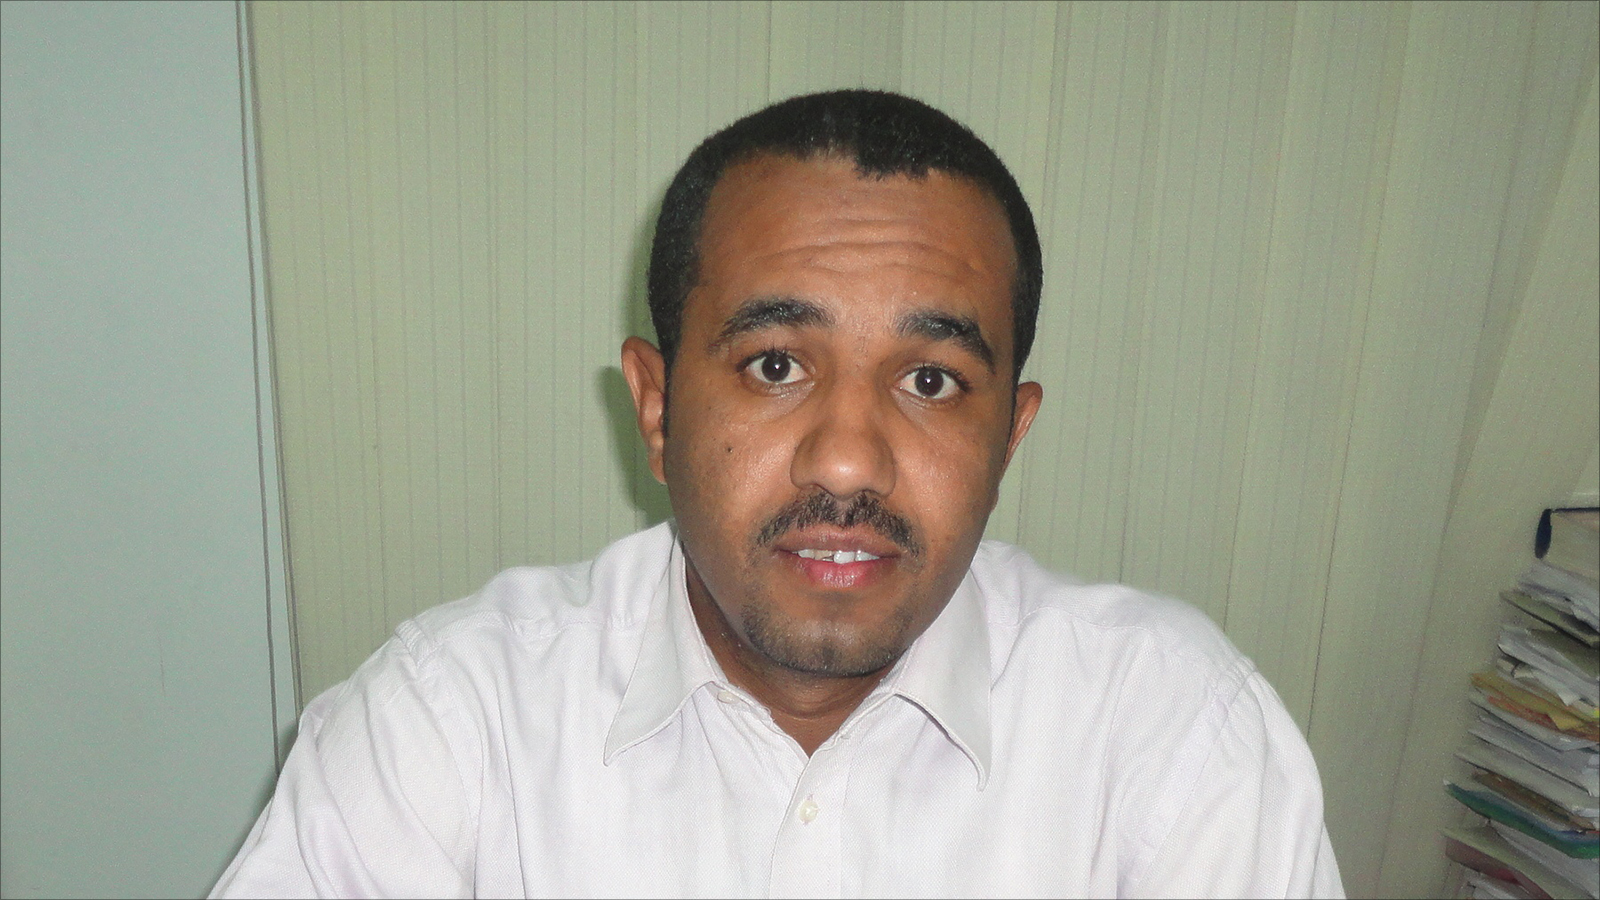 ‪نصر: الحكومة وقعت في فخ كبير عندما سلمت الشأن الاقتصادي للحوثيين‬  (الجزيرة)